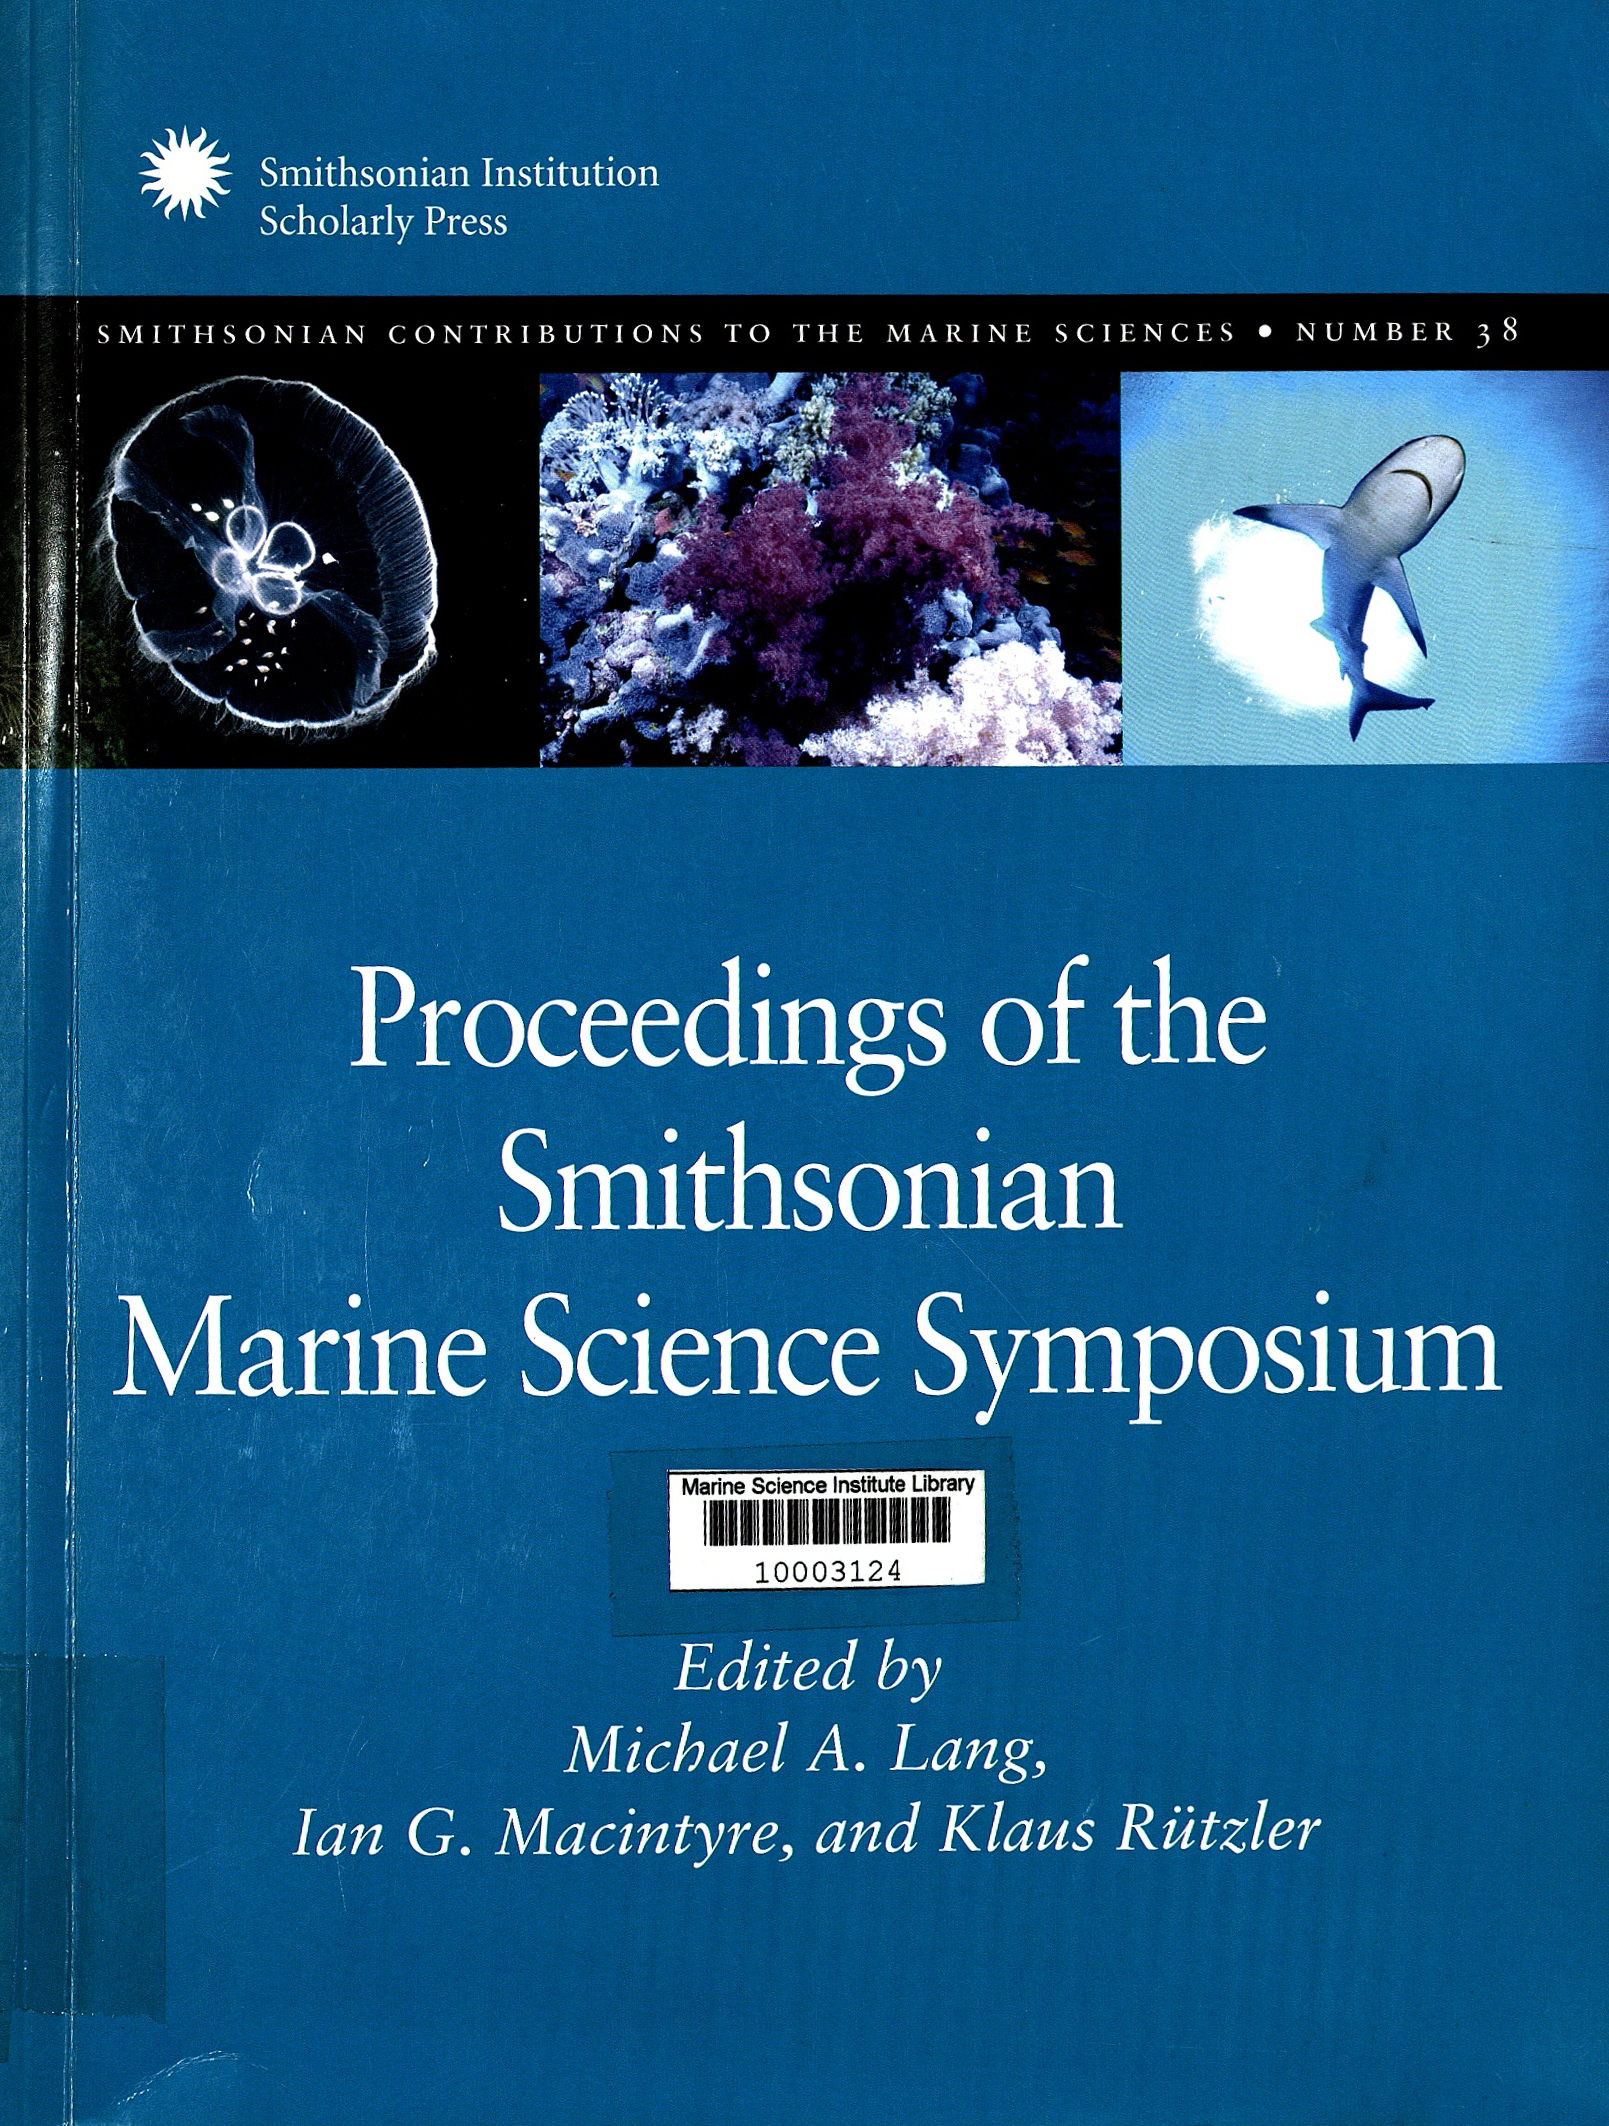 Smithsonian Marine Science Symposium (2007 Washington D.C.). Proceedings of the Marine Science Symposium.